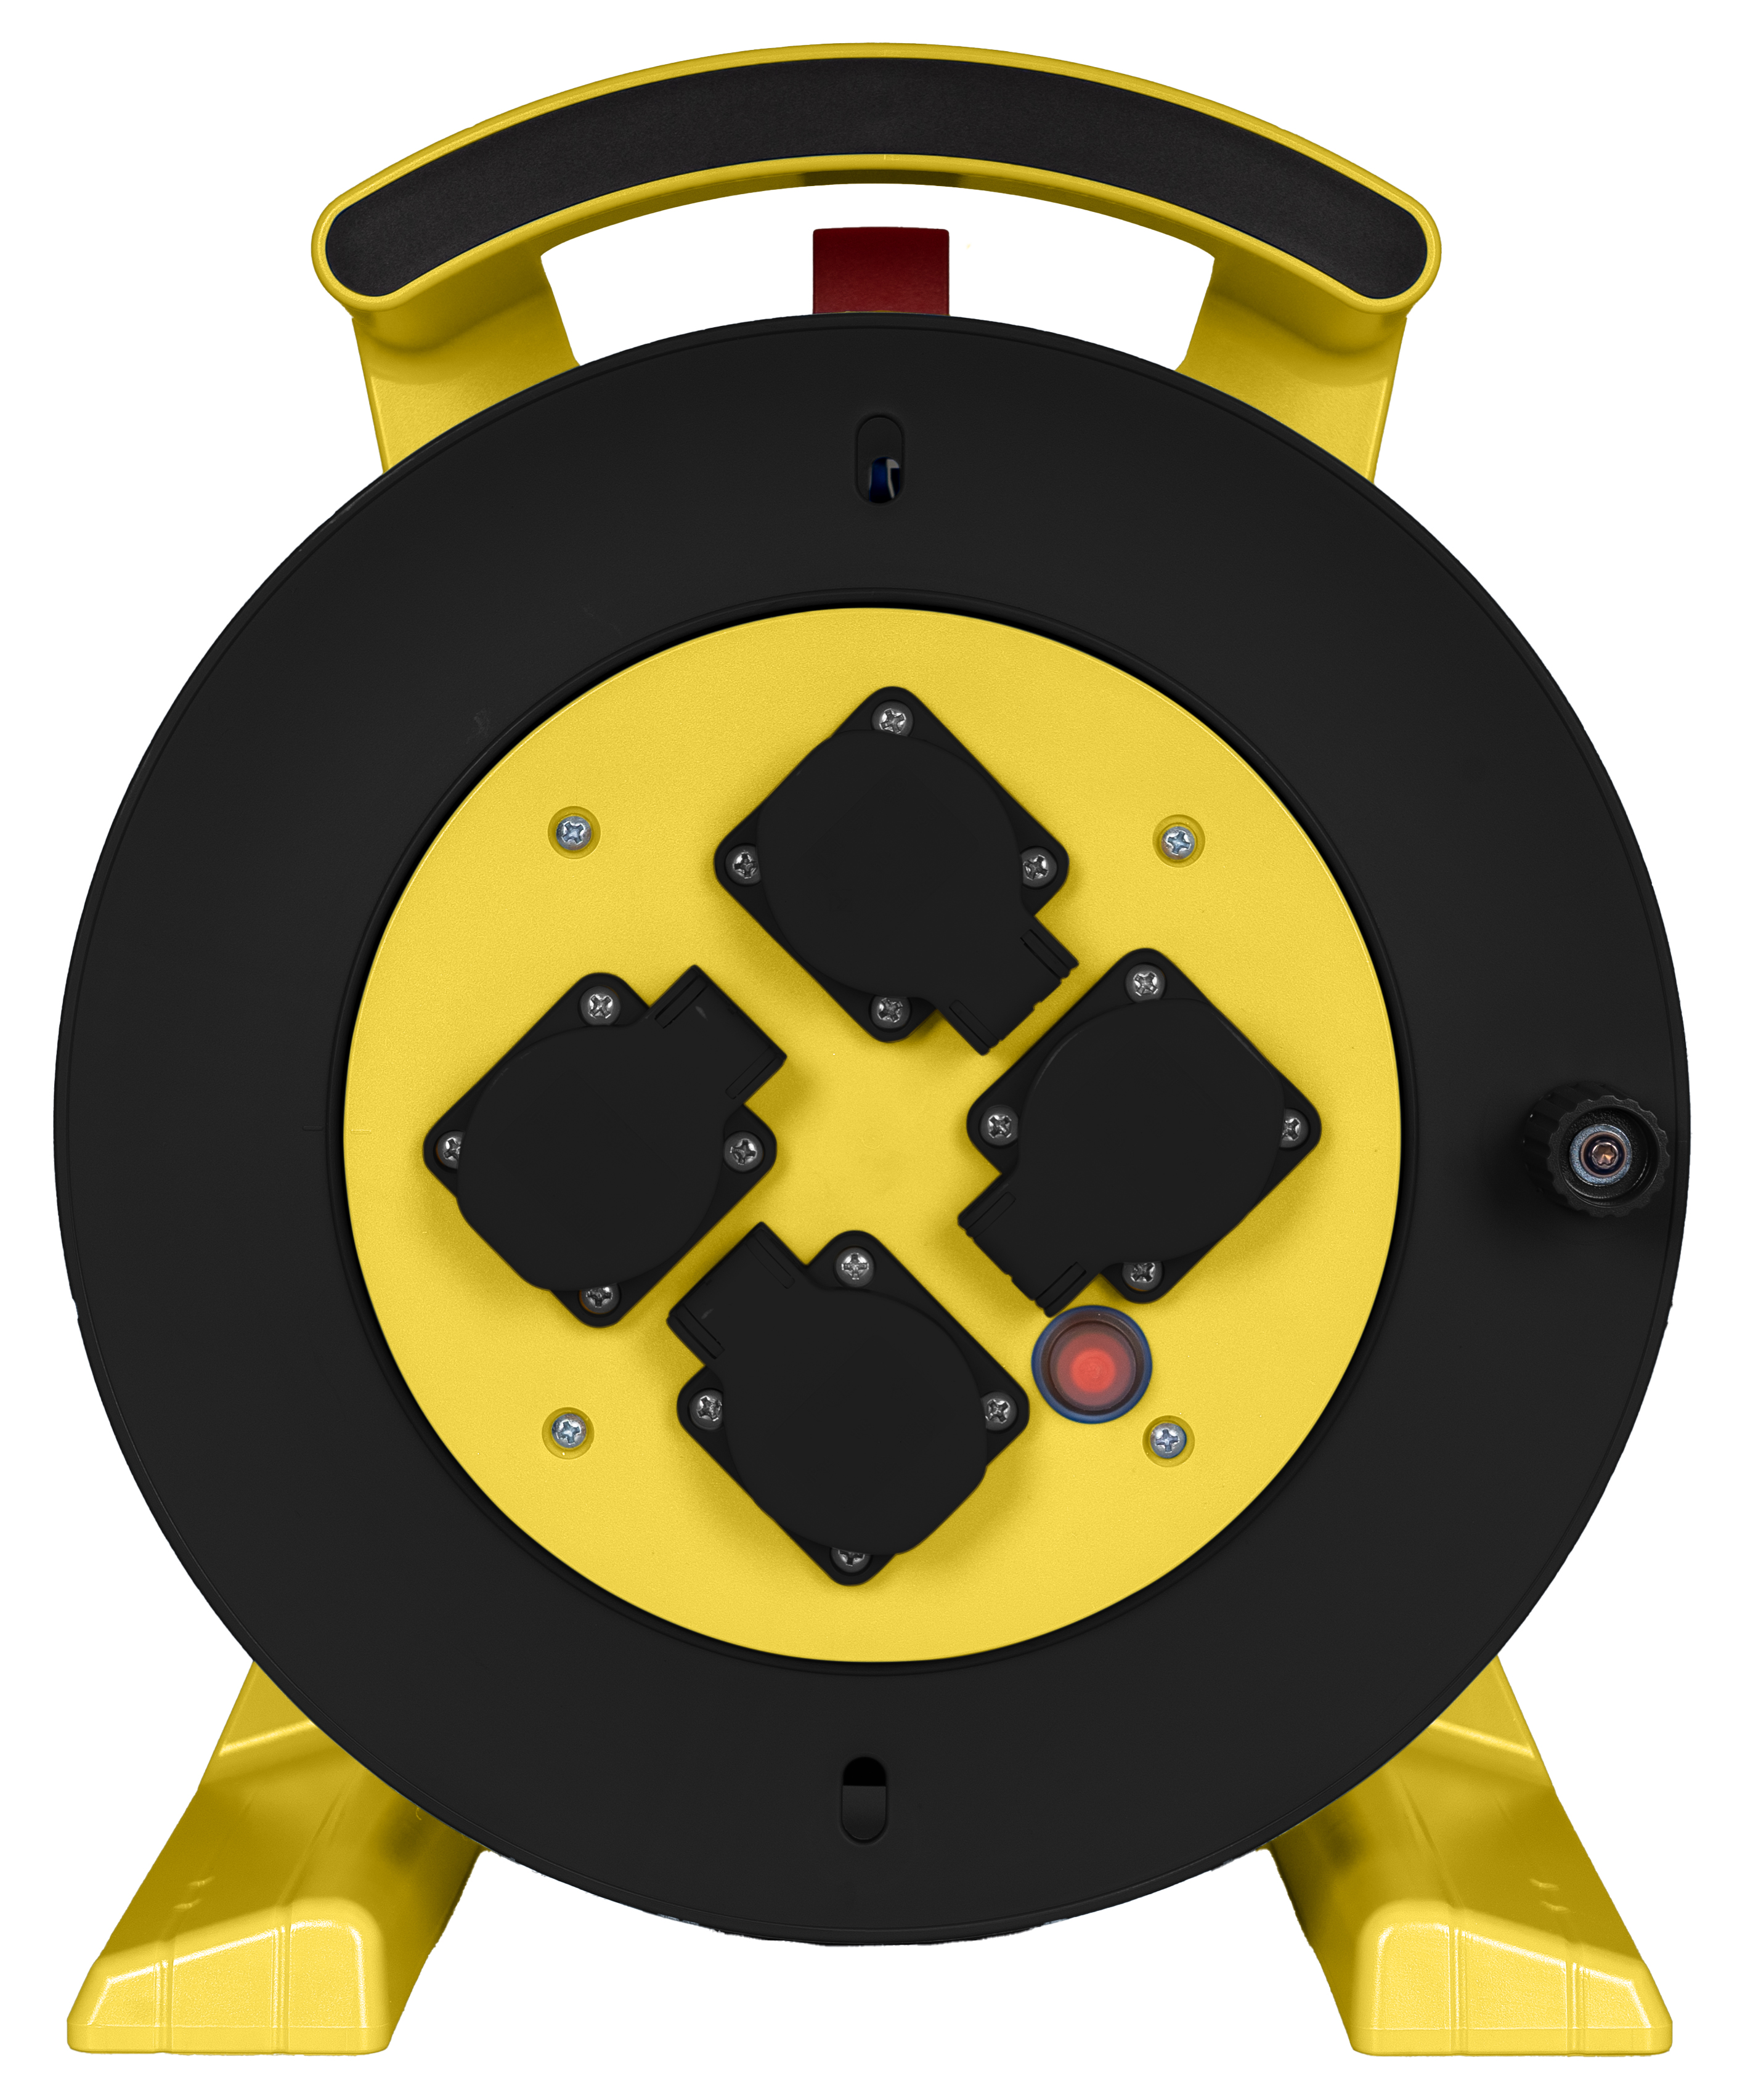 Leerkabeltrommel in gelb-schwarz, 4 x Schutzkontakt-Steckdose JUMBO L 2.0